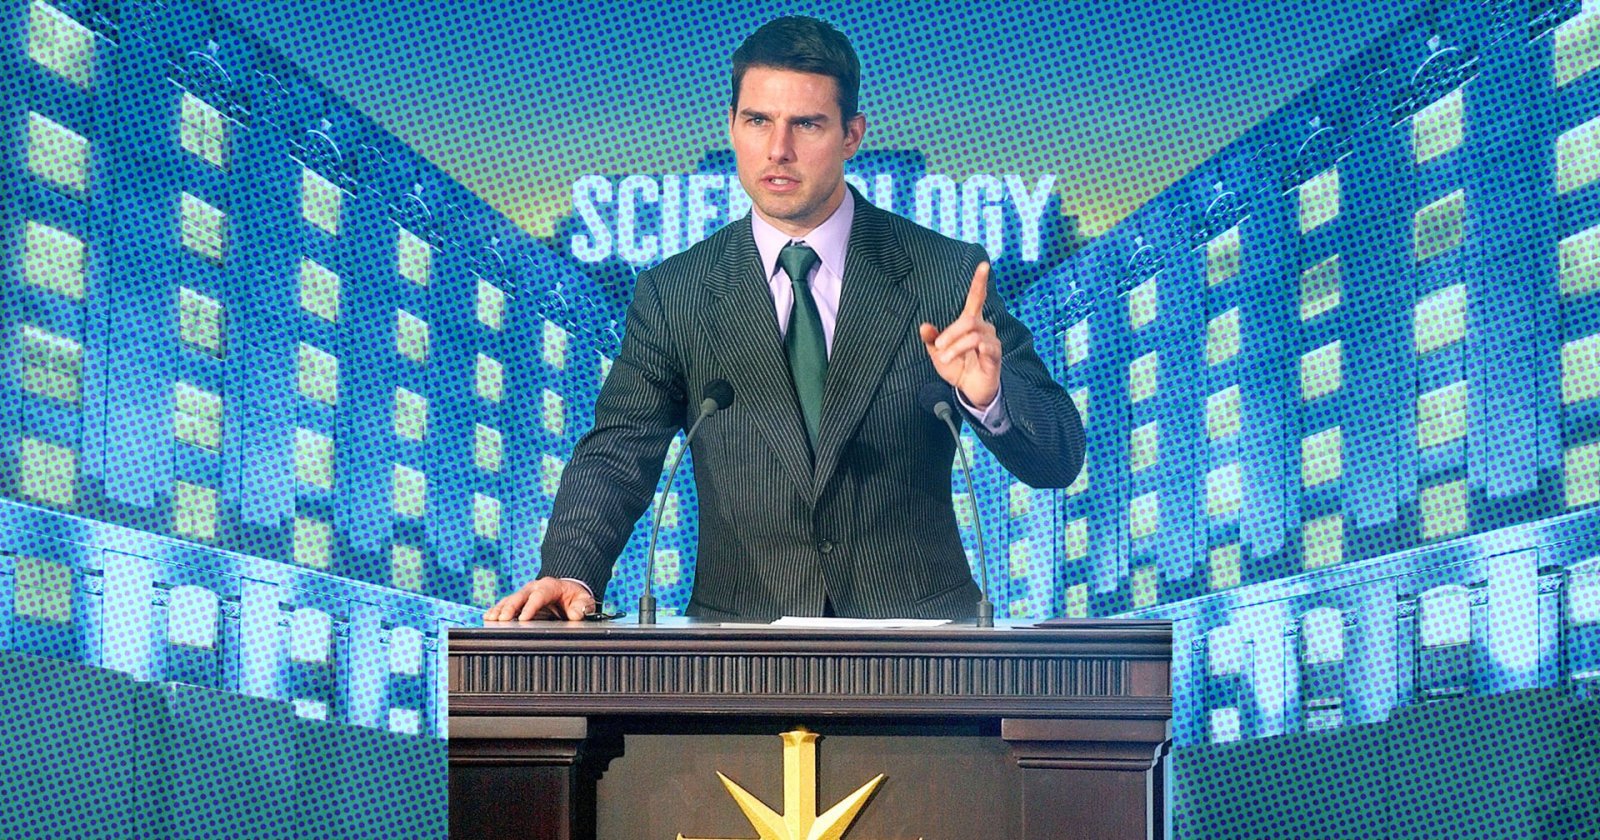 ย้อนรอยลัทธิฉาว Scientology และความ Perfectionist ของ Tom Cruise